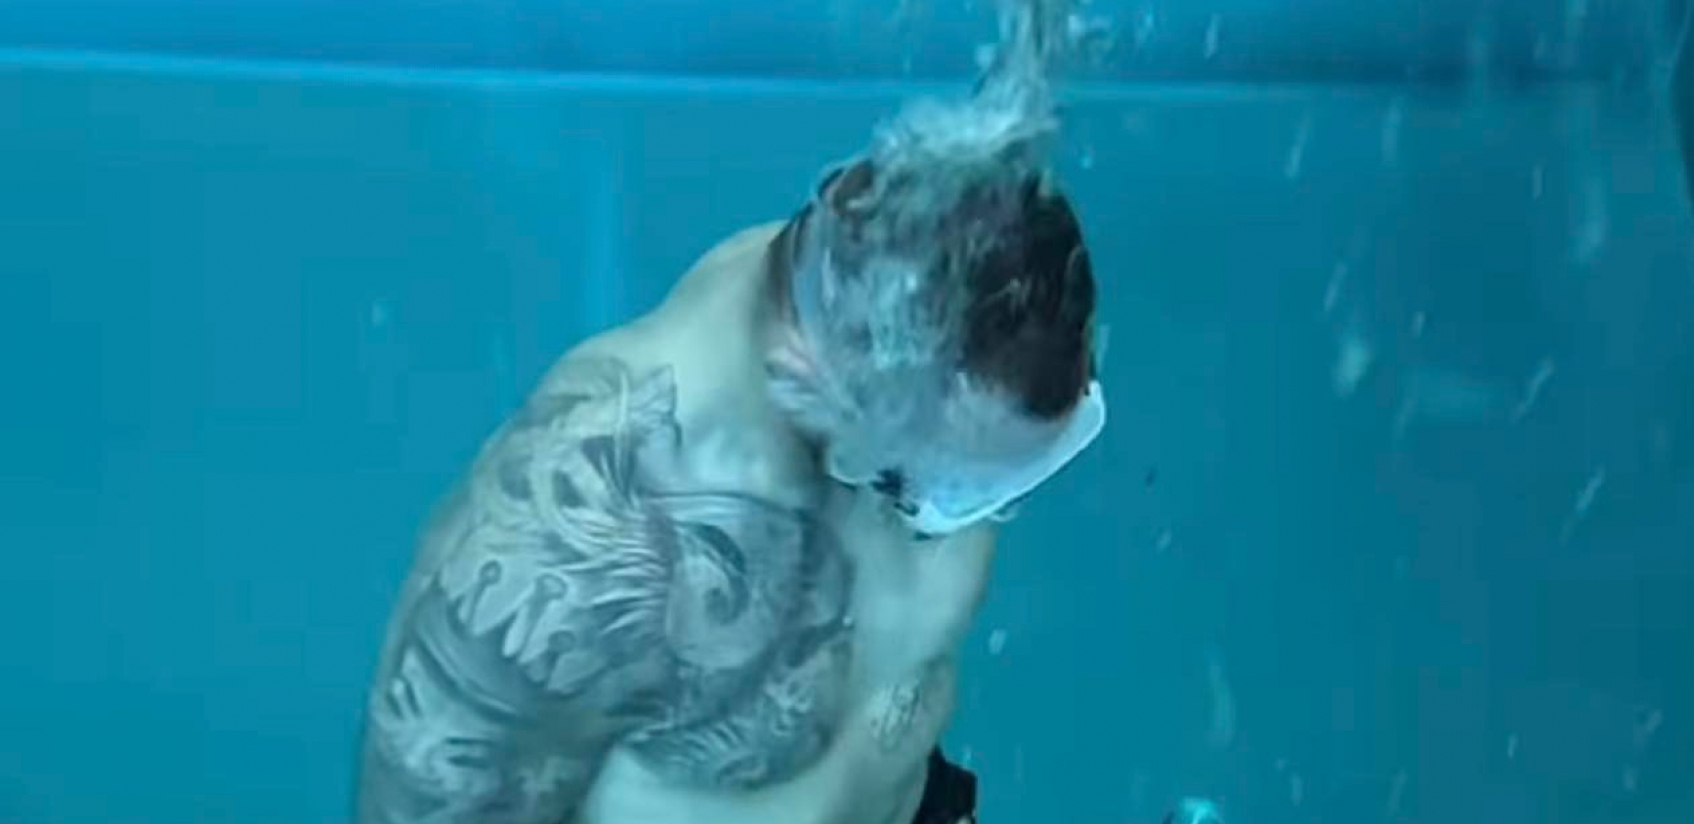 NESTVARNA IZDRŽLJIVOST Brutalan trening našeg MMA borca pod vodom (VIDEO)